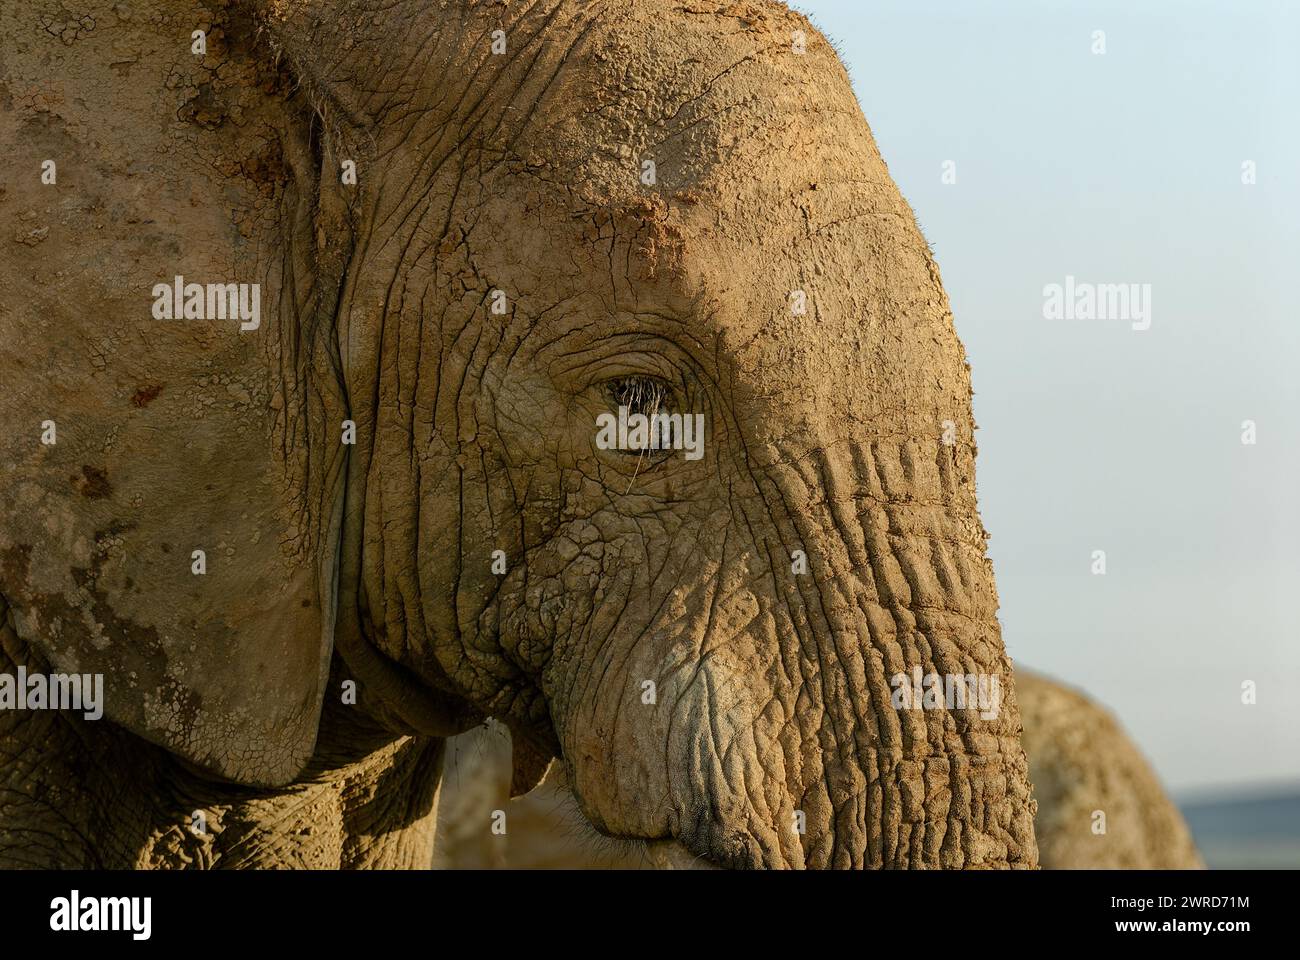 Éléphants en jeu - gros plan portrait de visage d'éléphant boueux. Beaucoup de détails. Banque D'Images